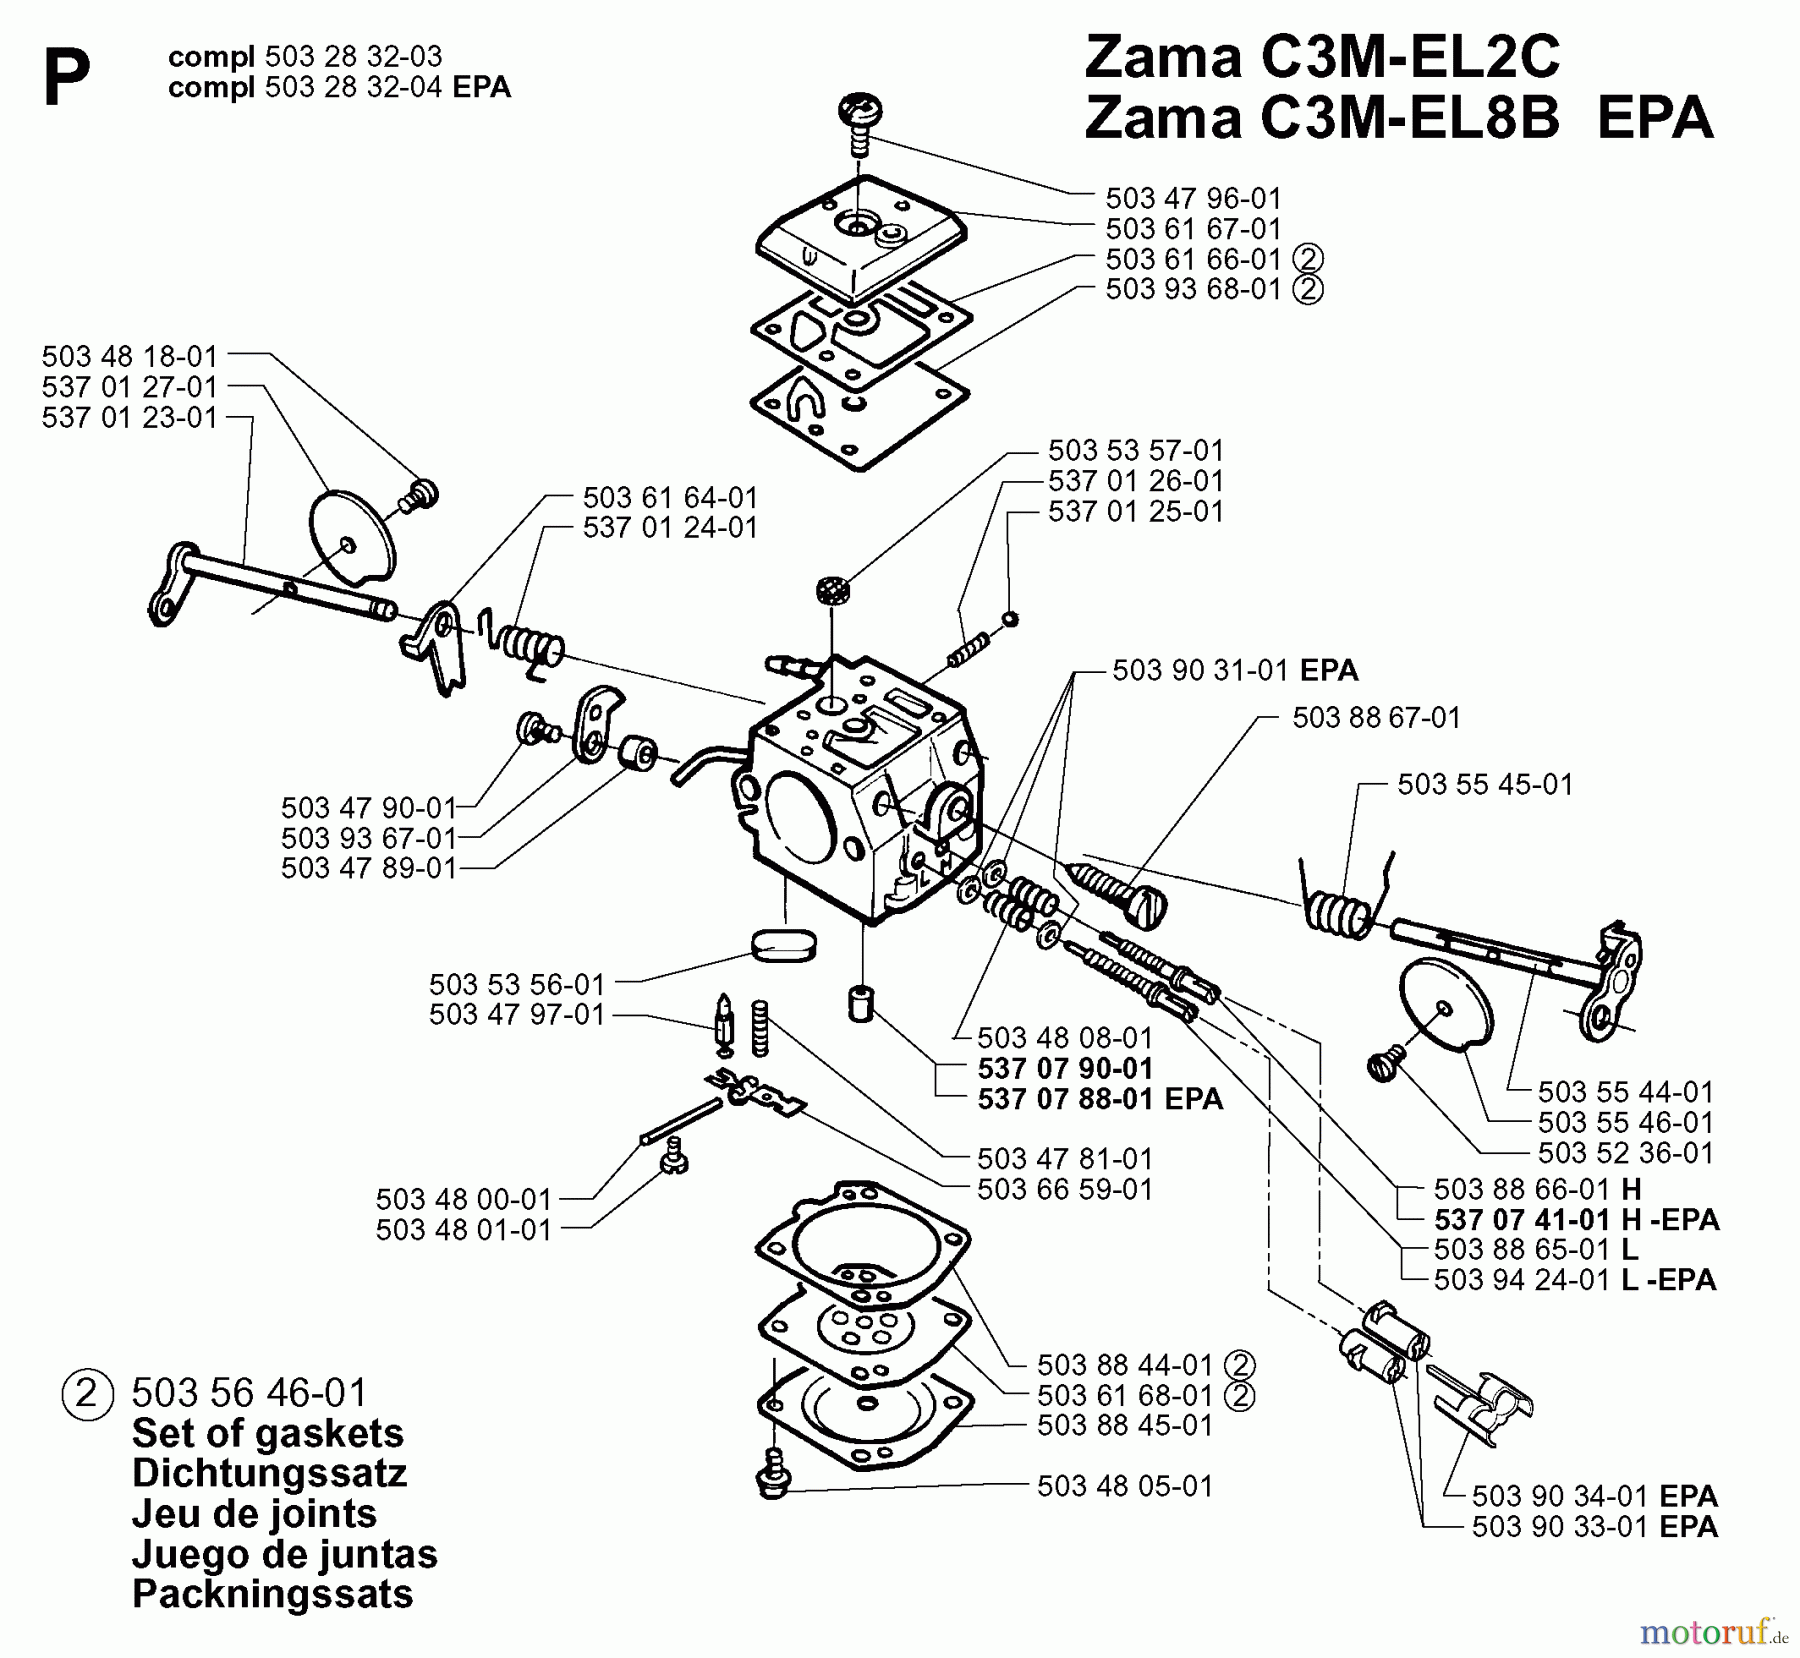  Jonsered Motorsägen 2165 EPA - Jonsered Chainsaw (2000-04) CARBURETOR DETAILS